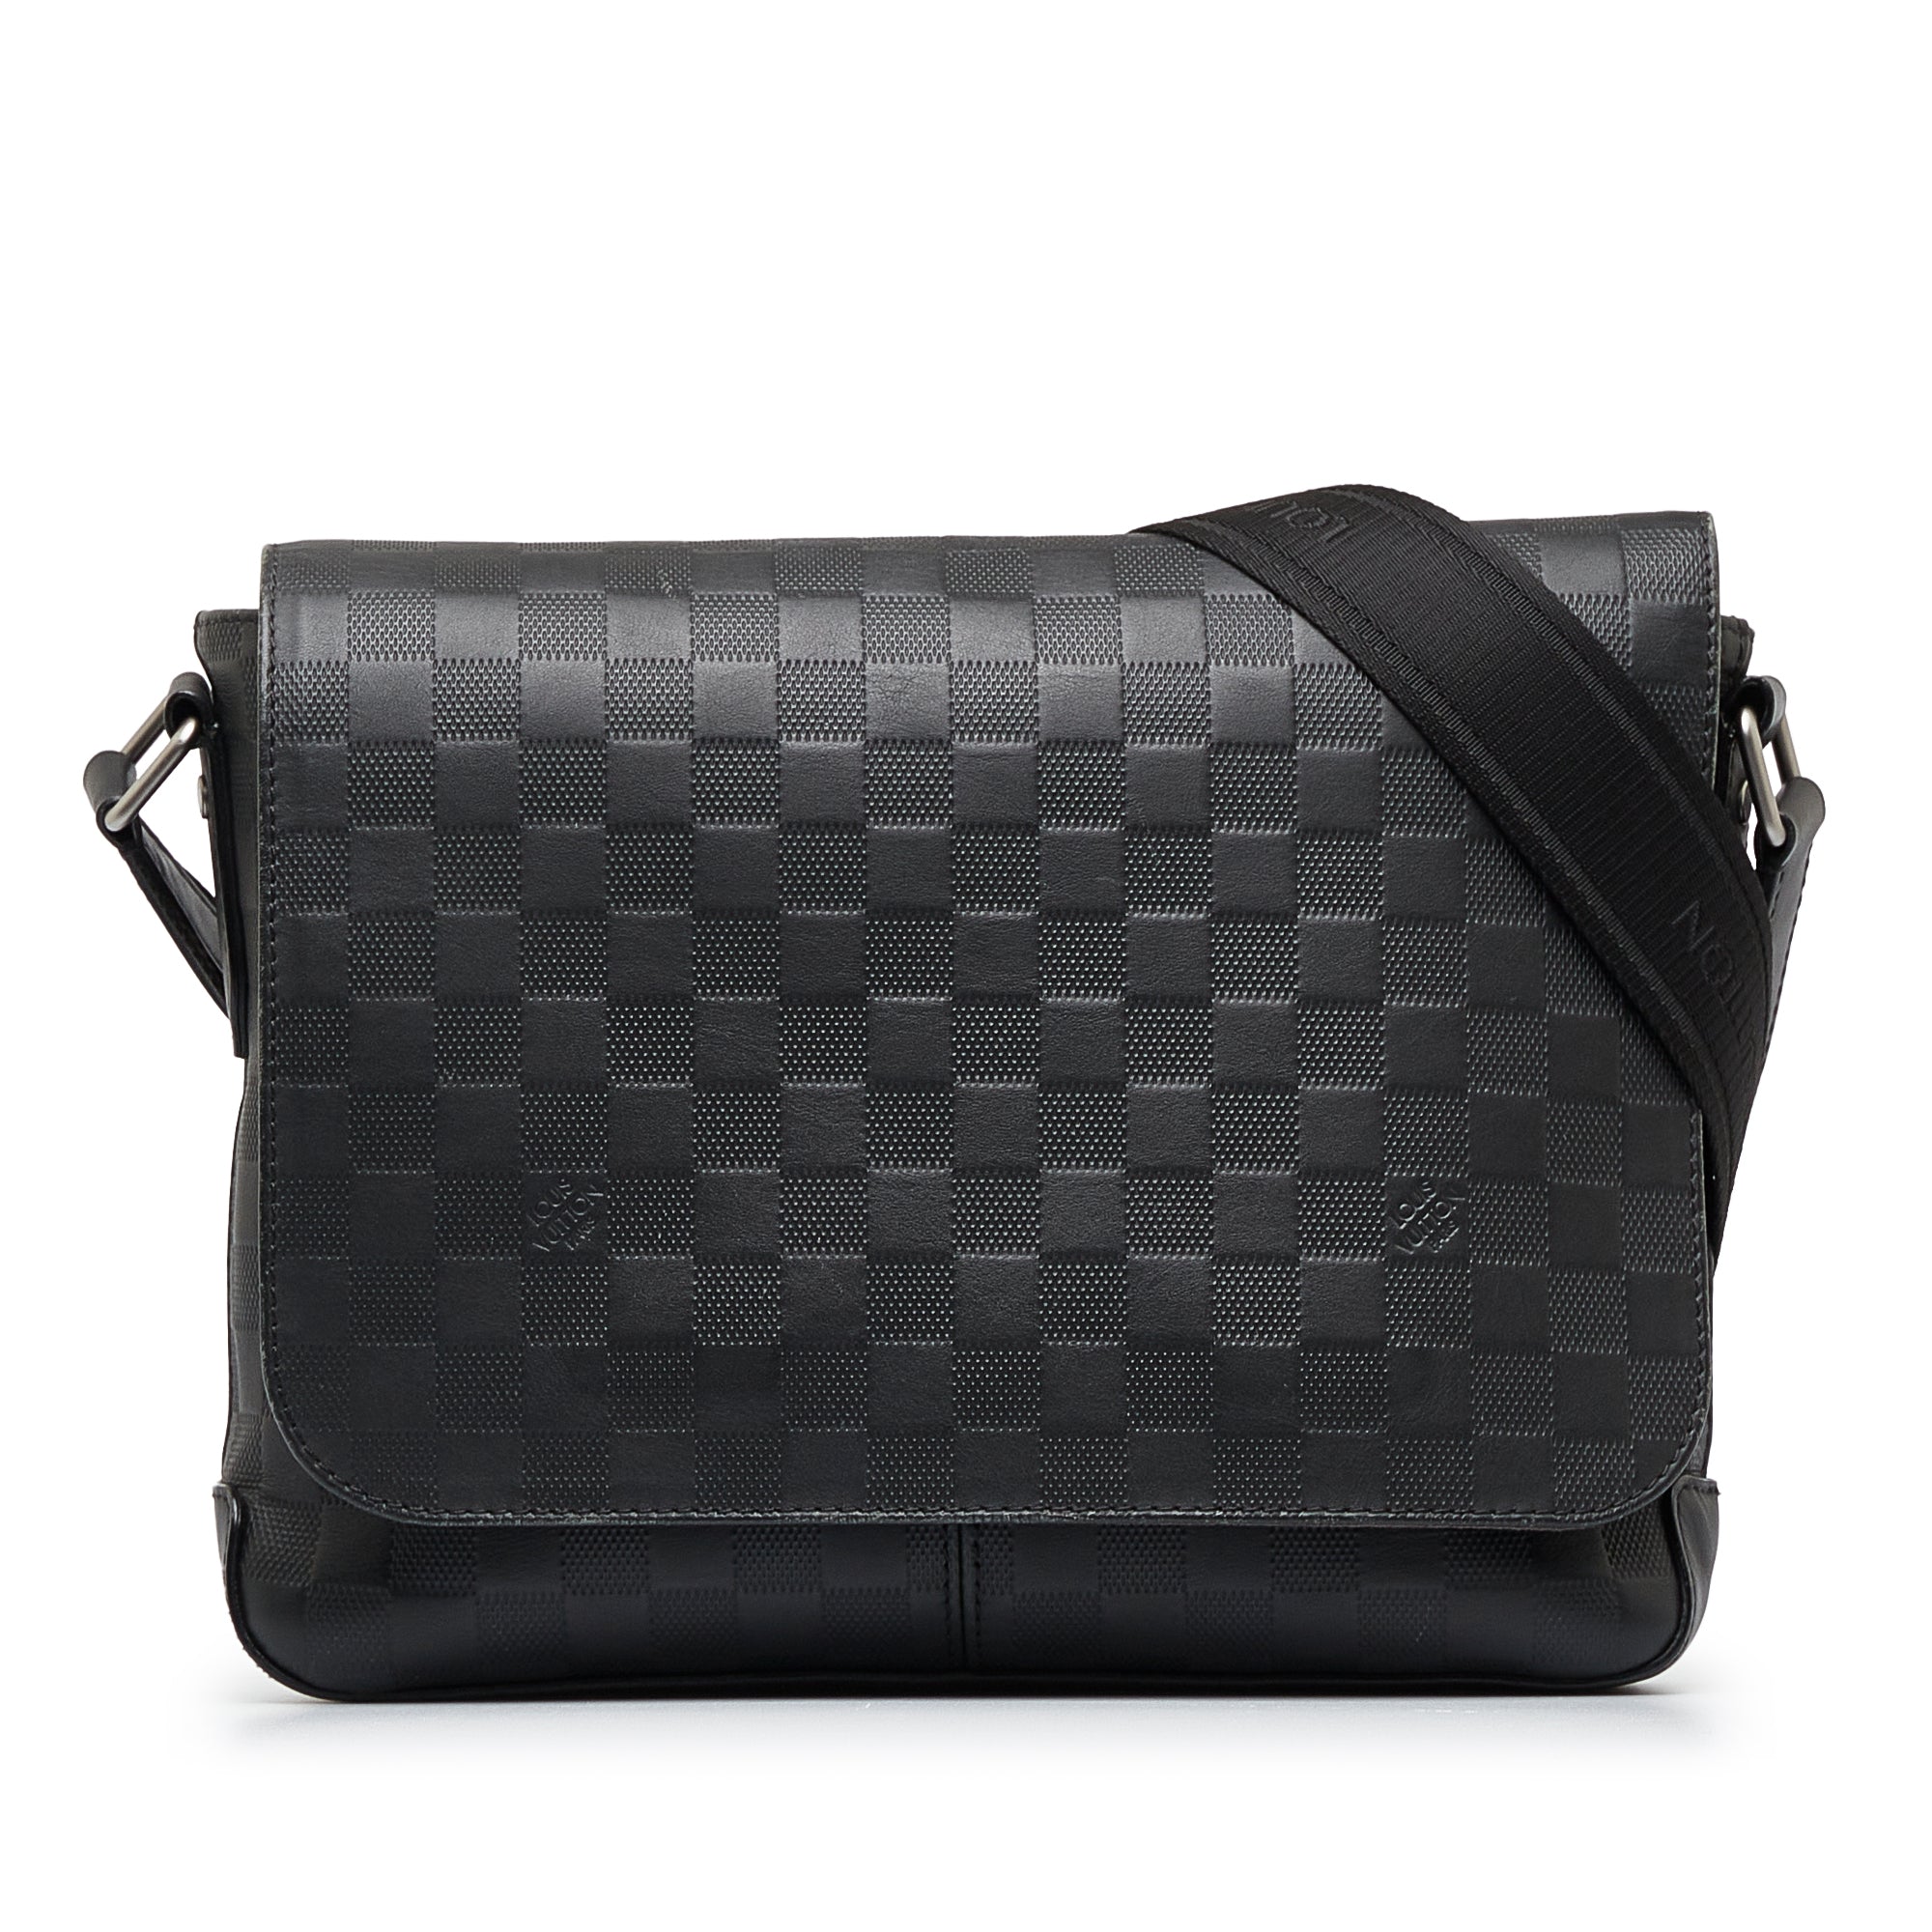 Louis Vuitton - District PM Messenger Bag - Leather - Black - Men - Luxury